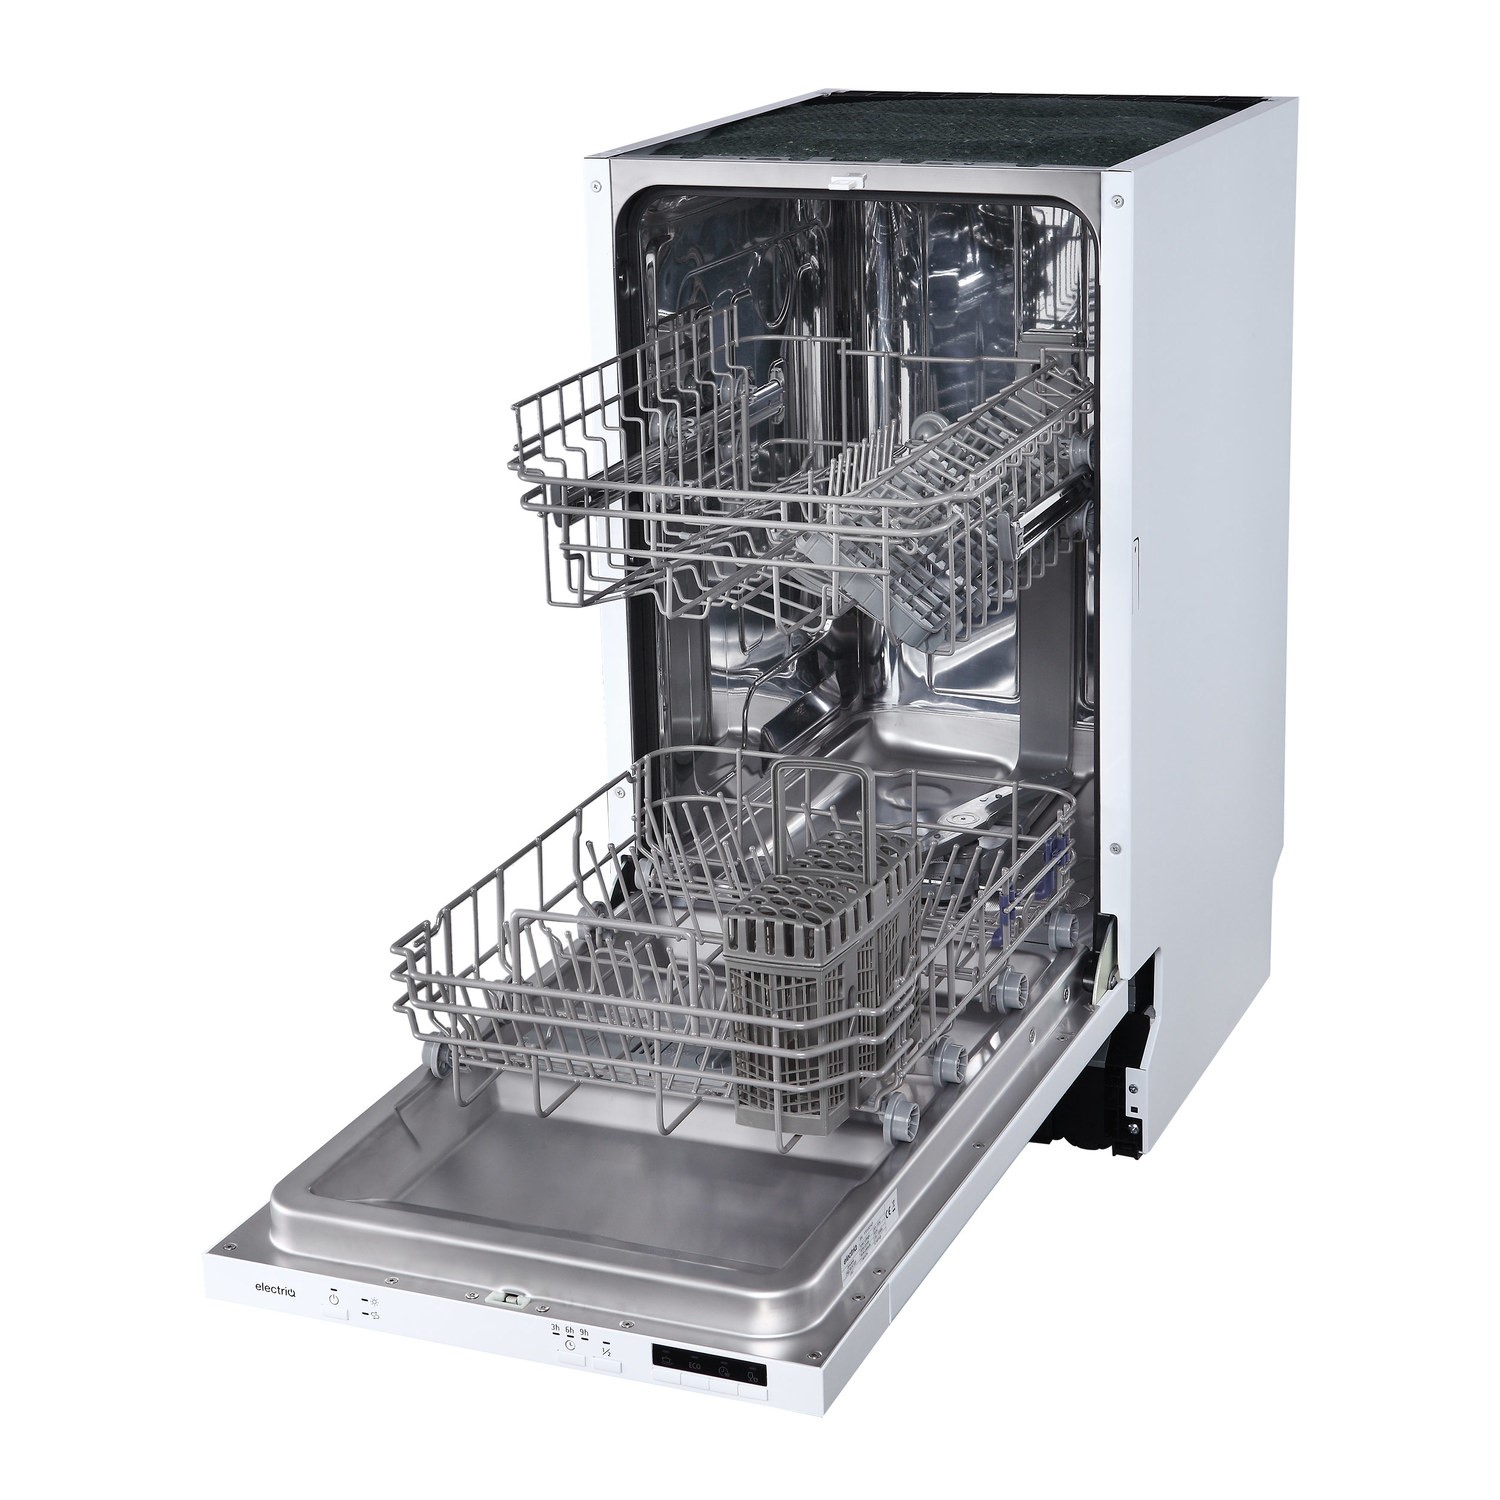 slimmest dishwasher uk